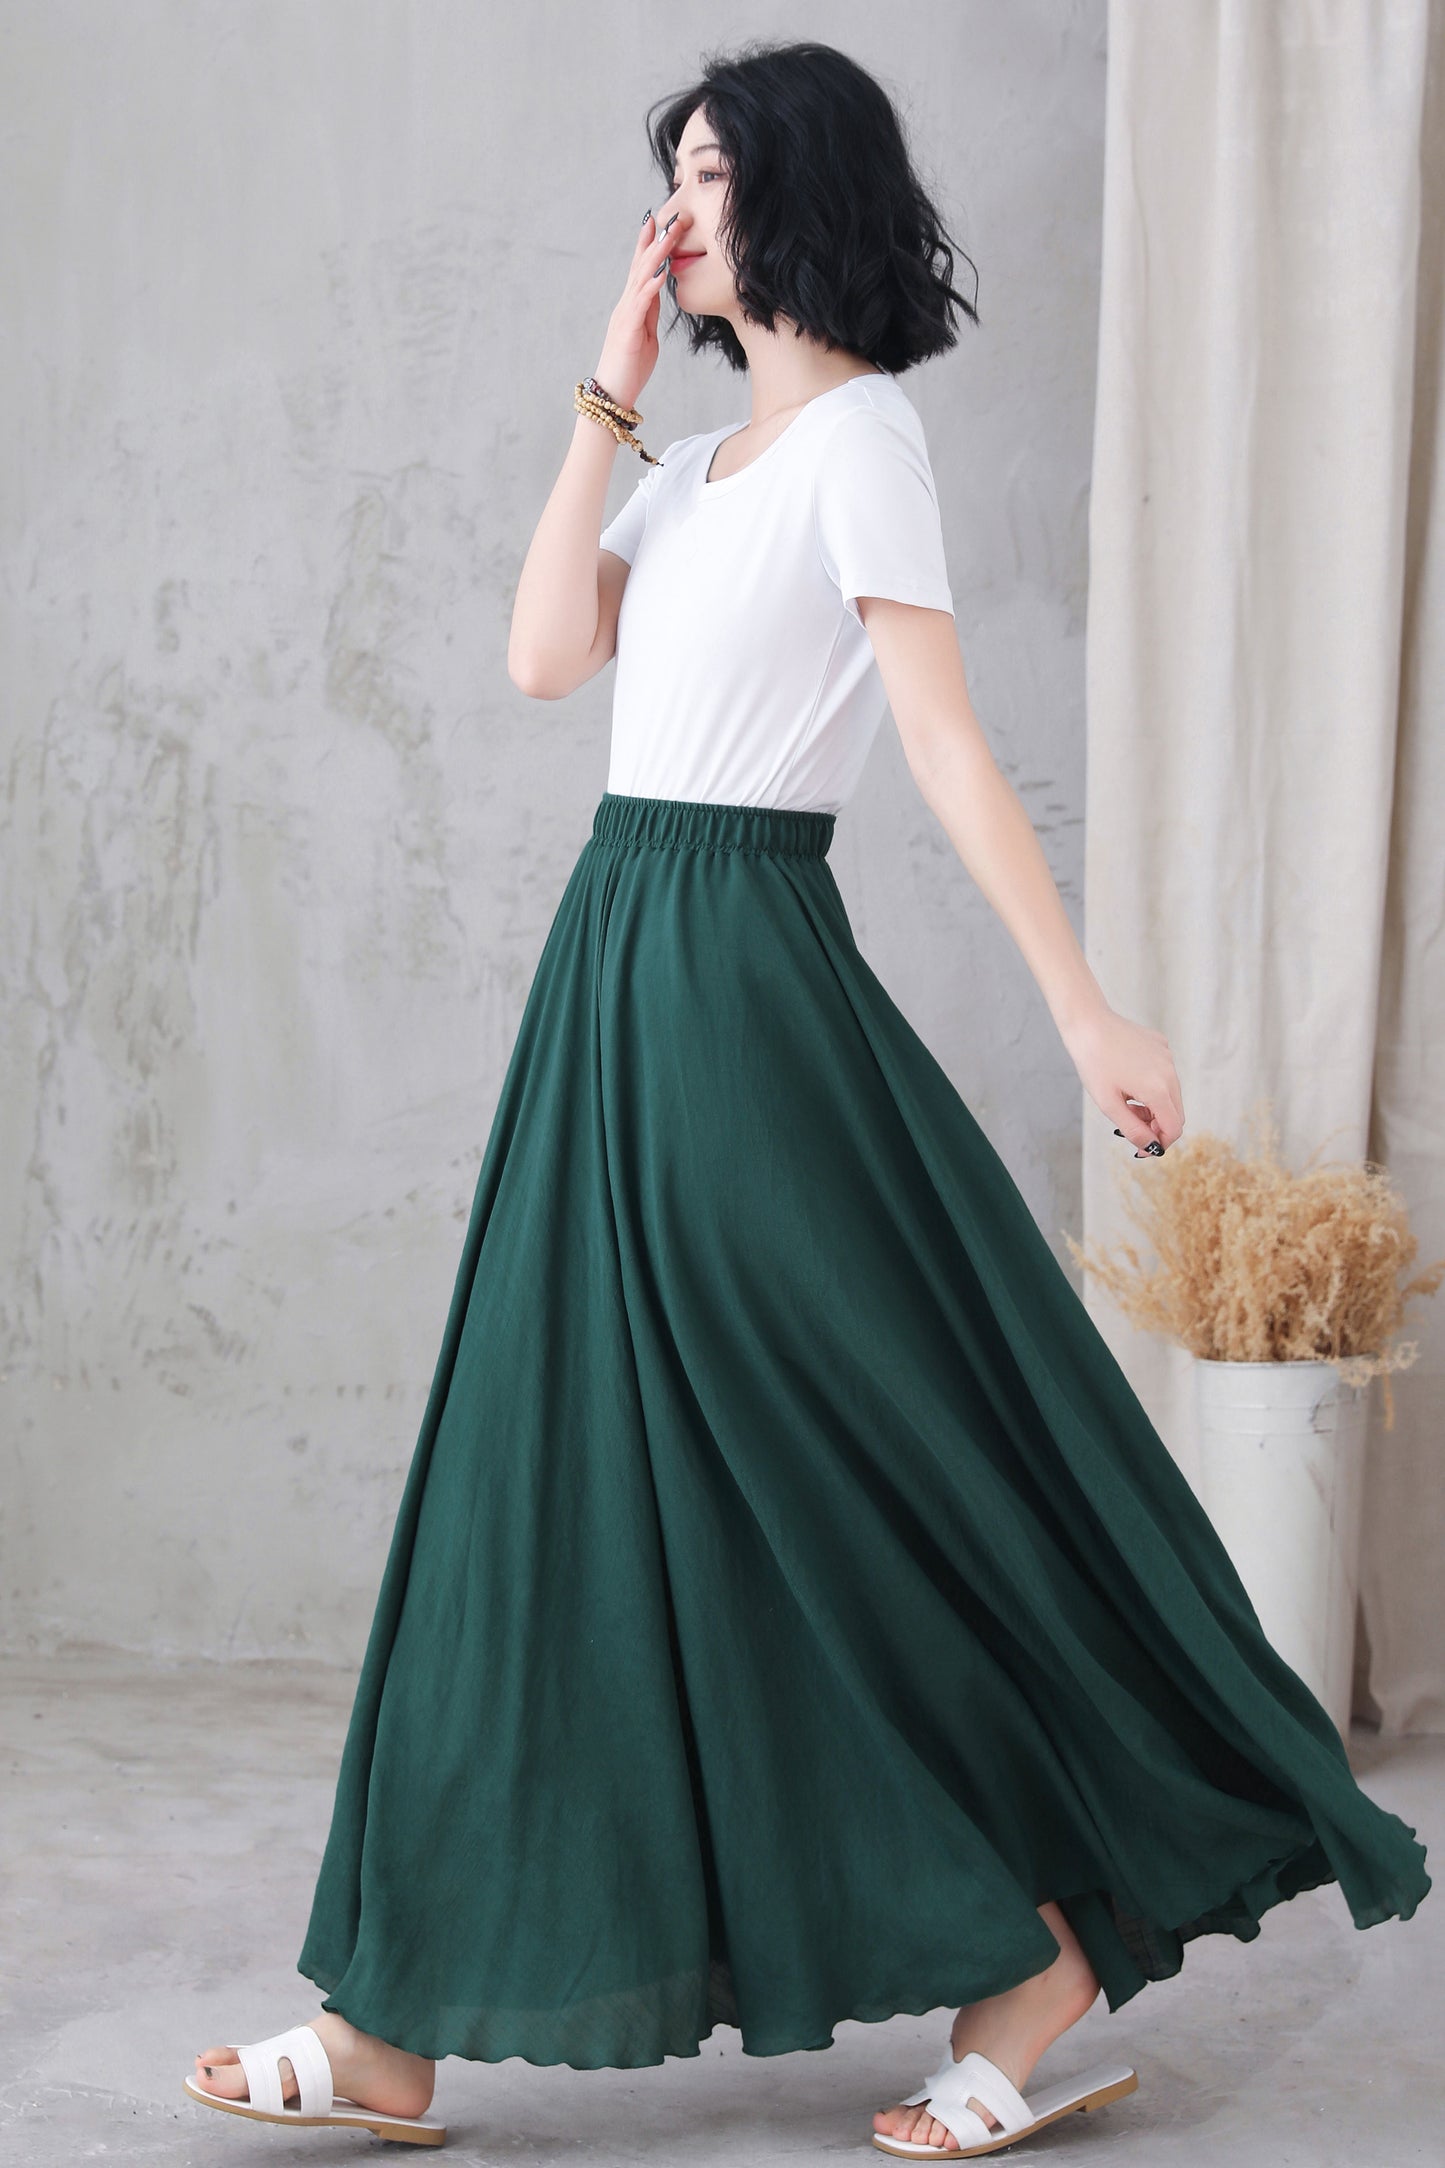 Elastic Waist Green Linen Long Skirt 3296